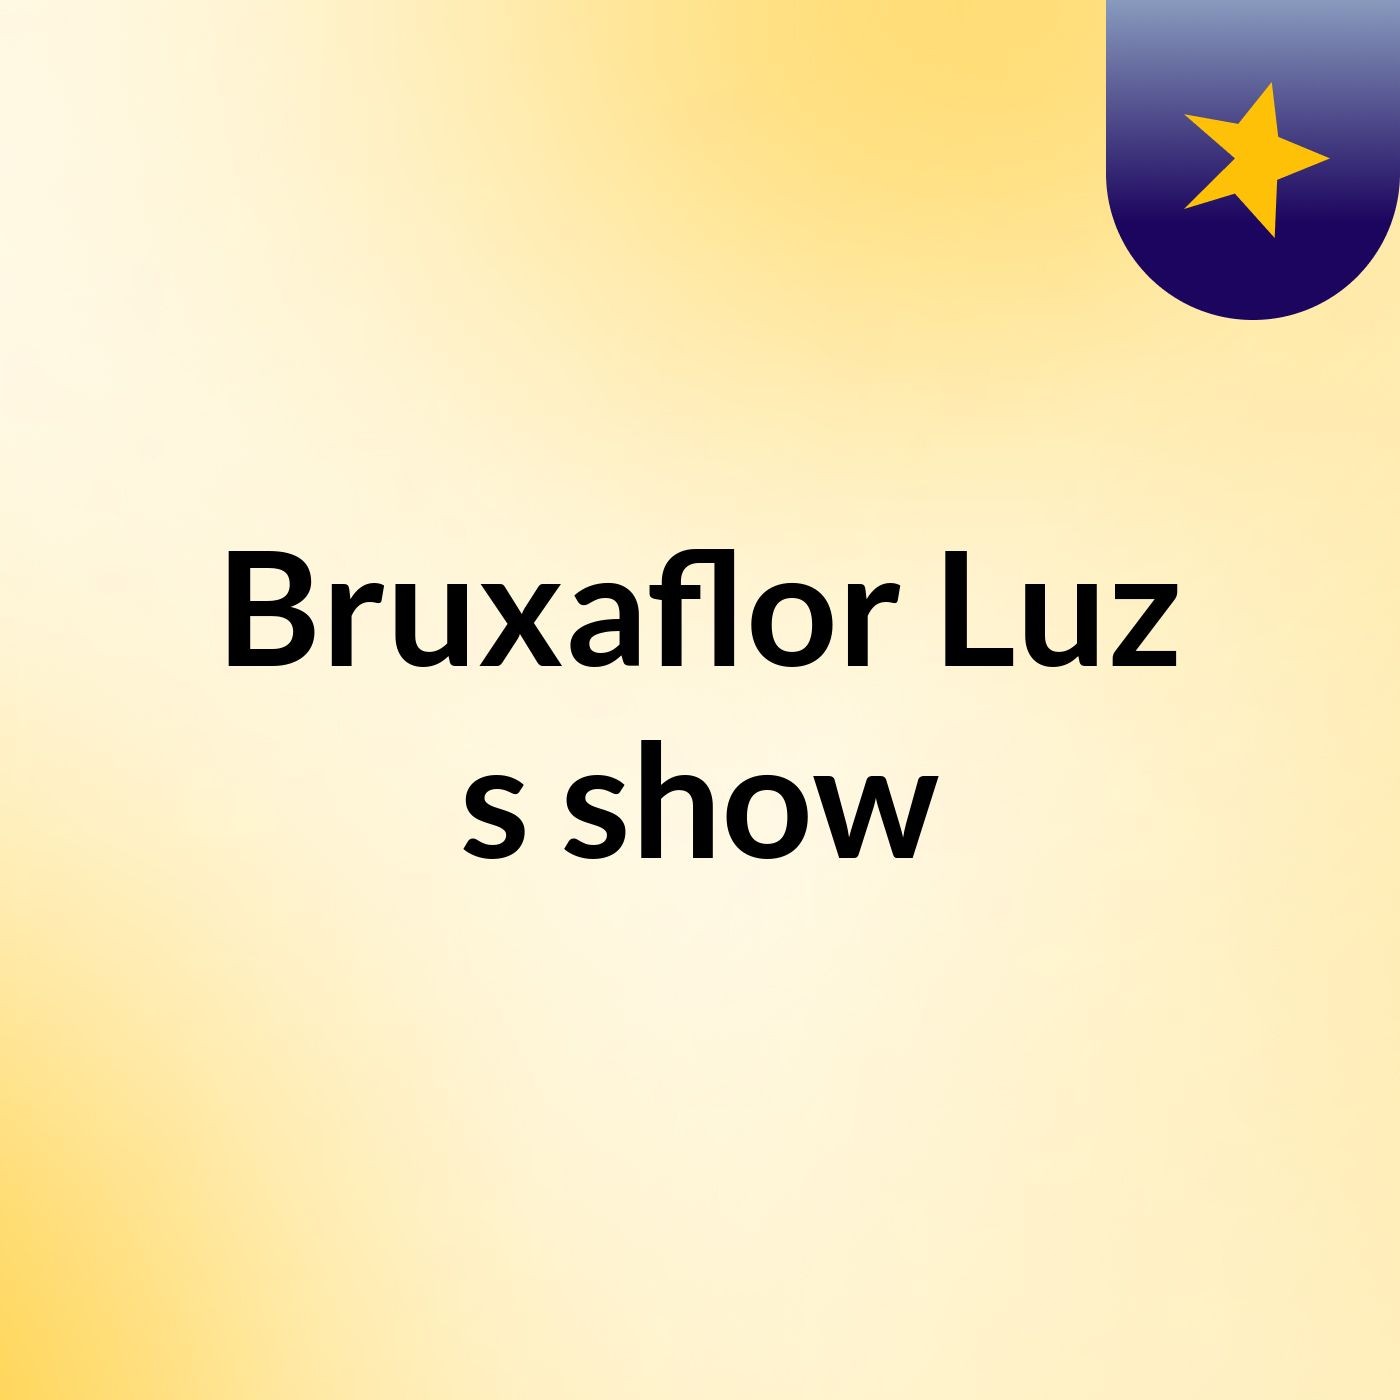 Bruxaflor Luz's show